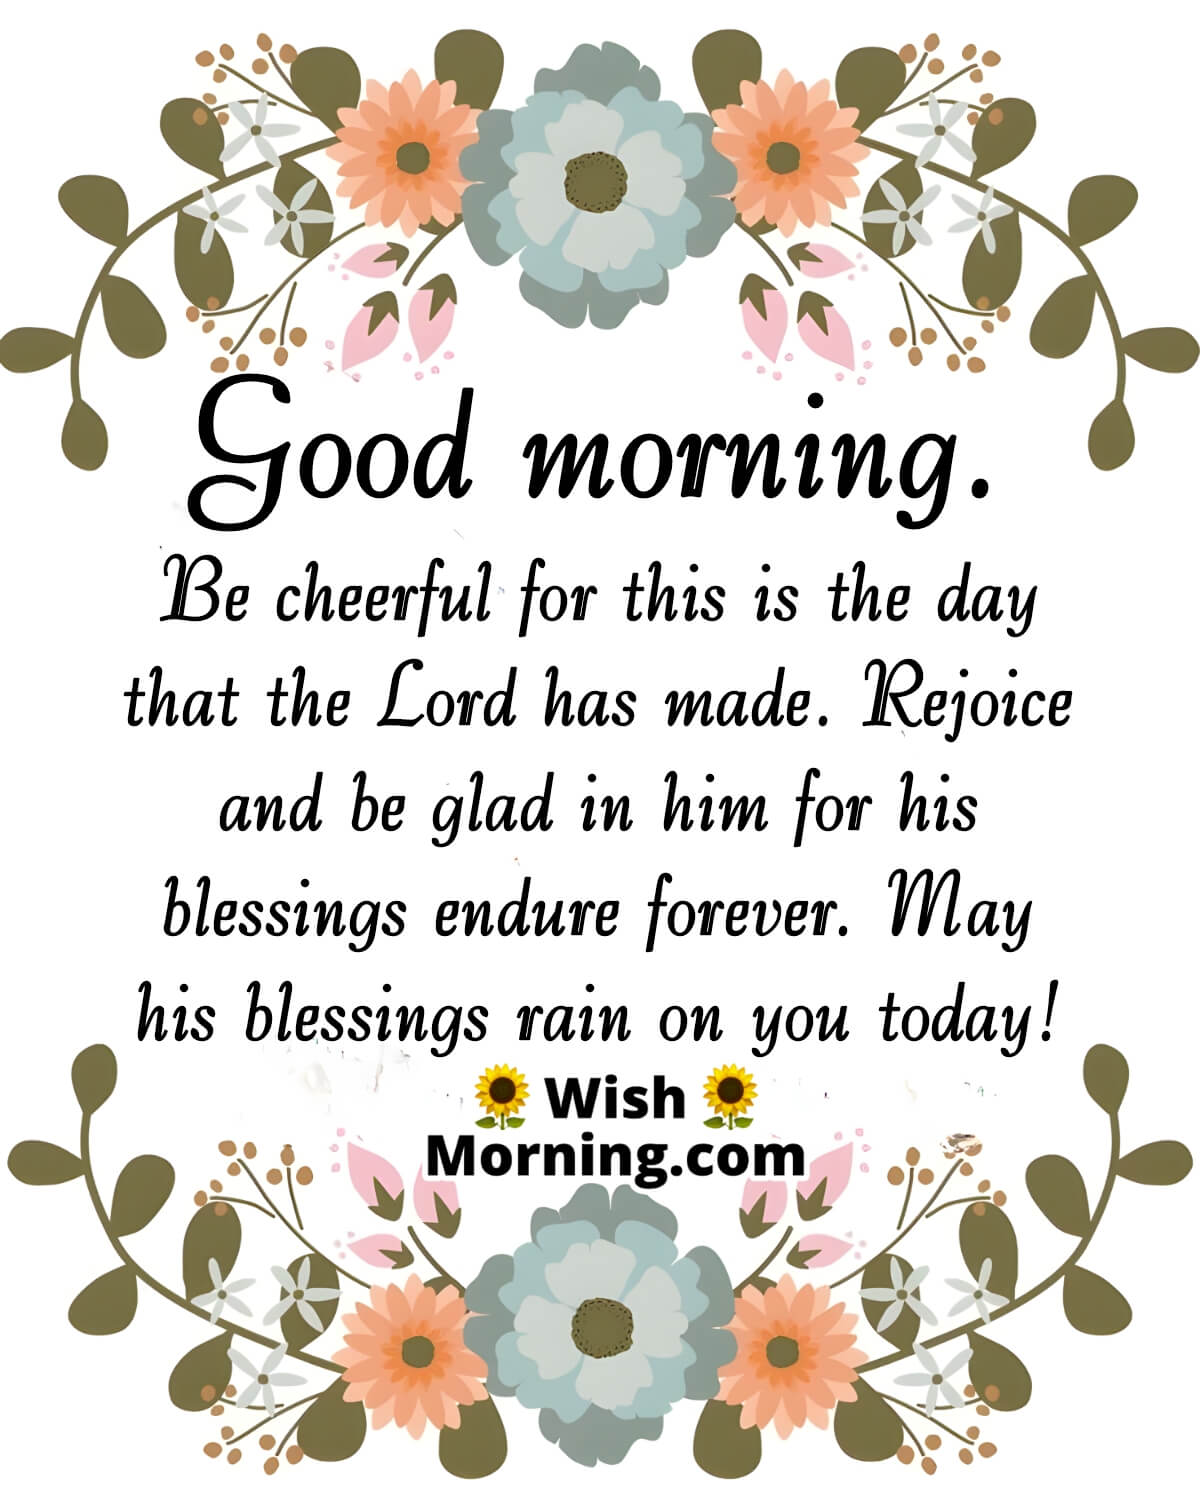 Good Morning Prayer Wishes - Wish Morning